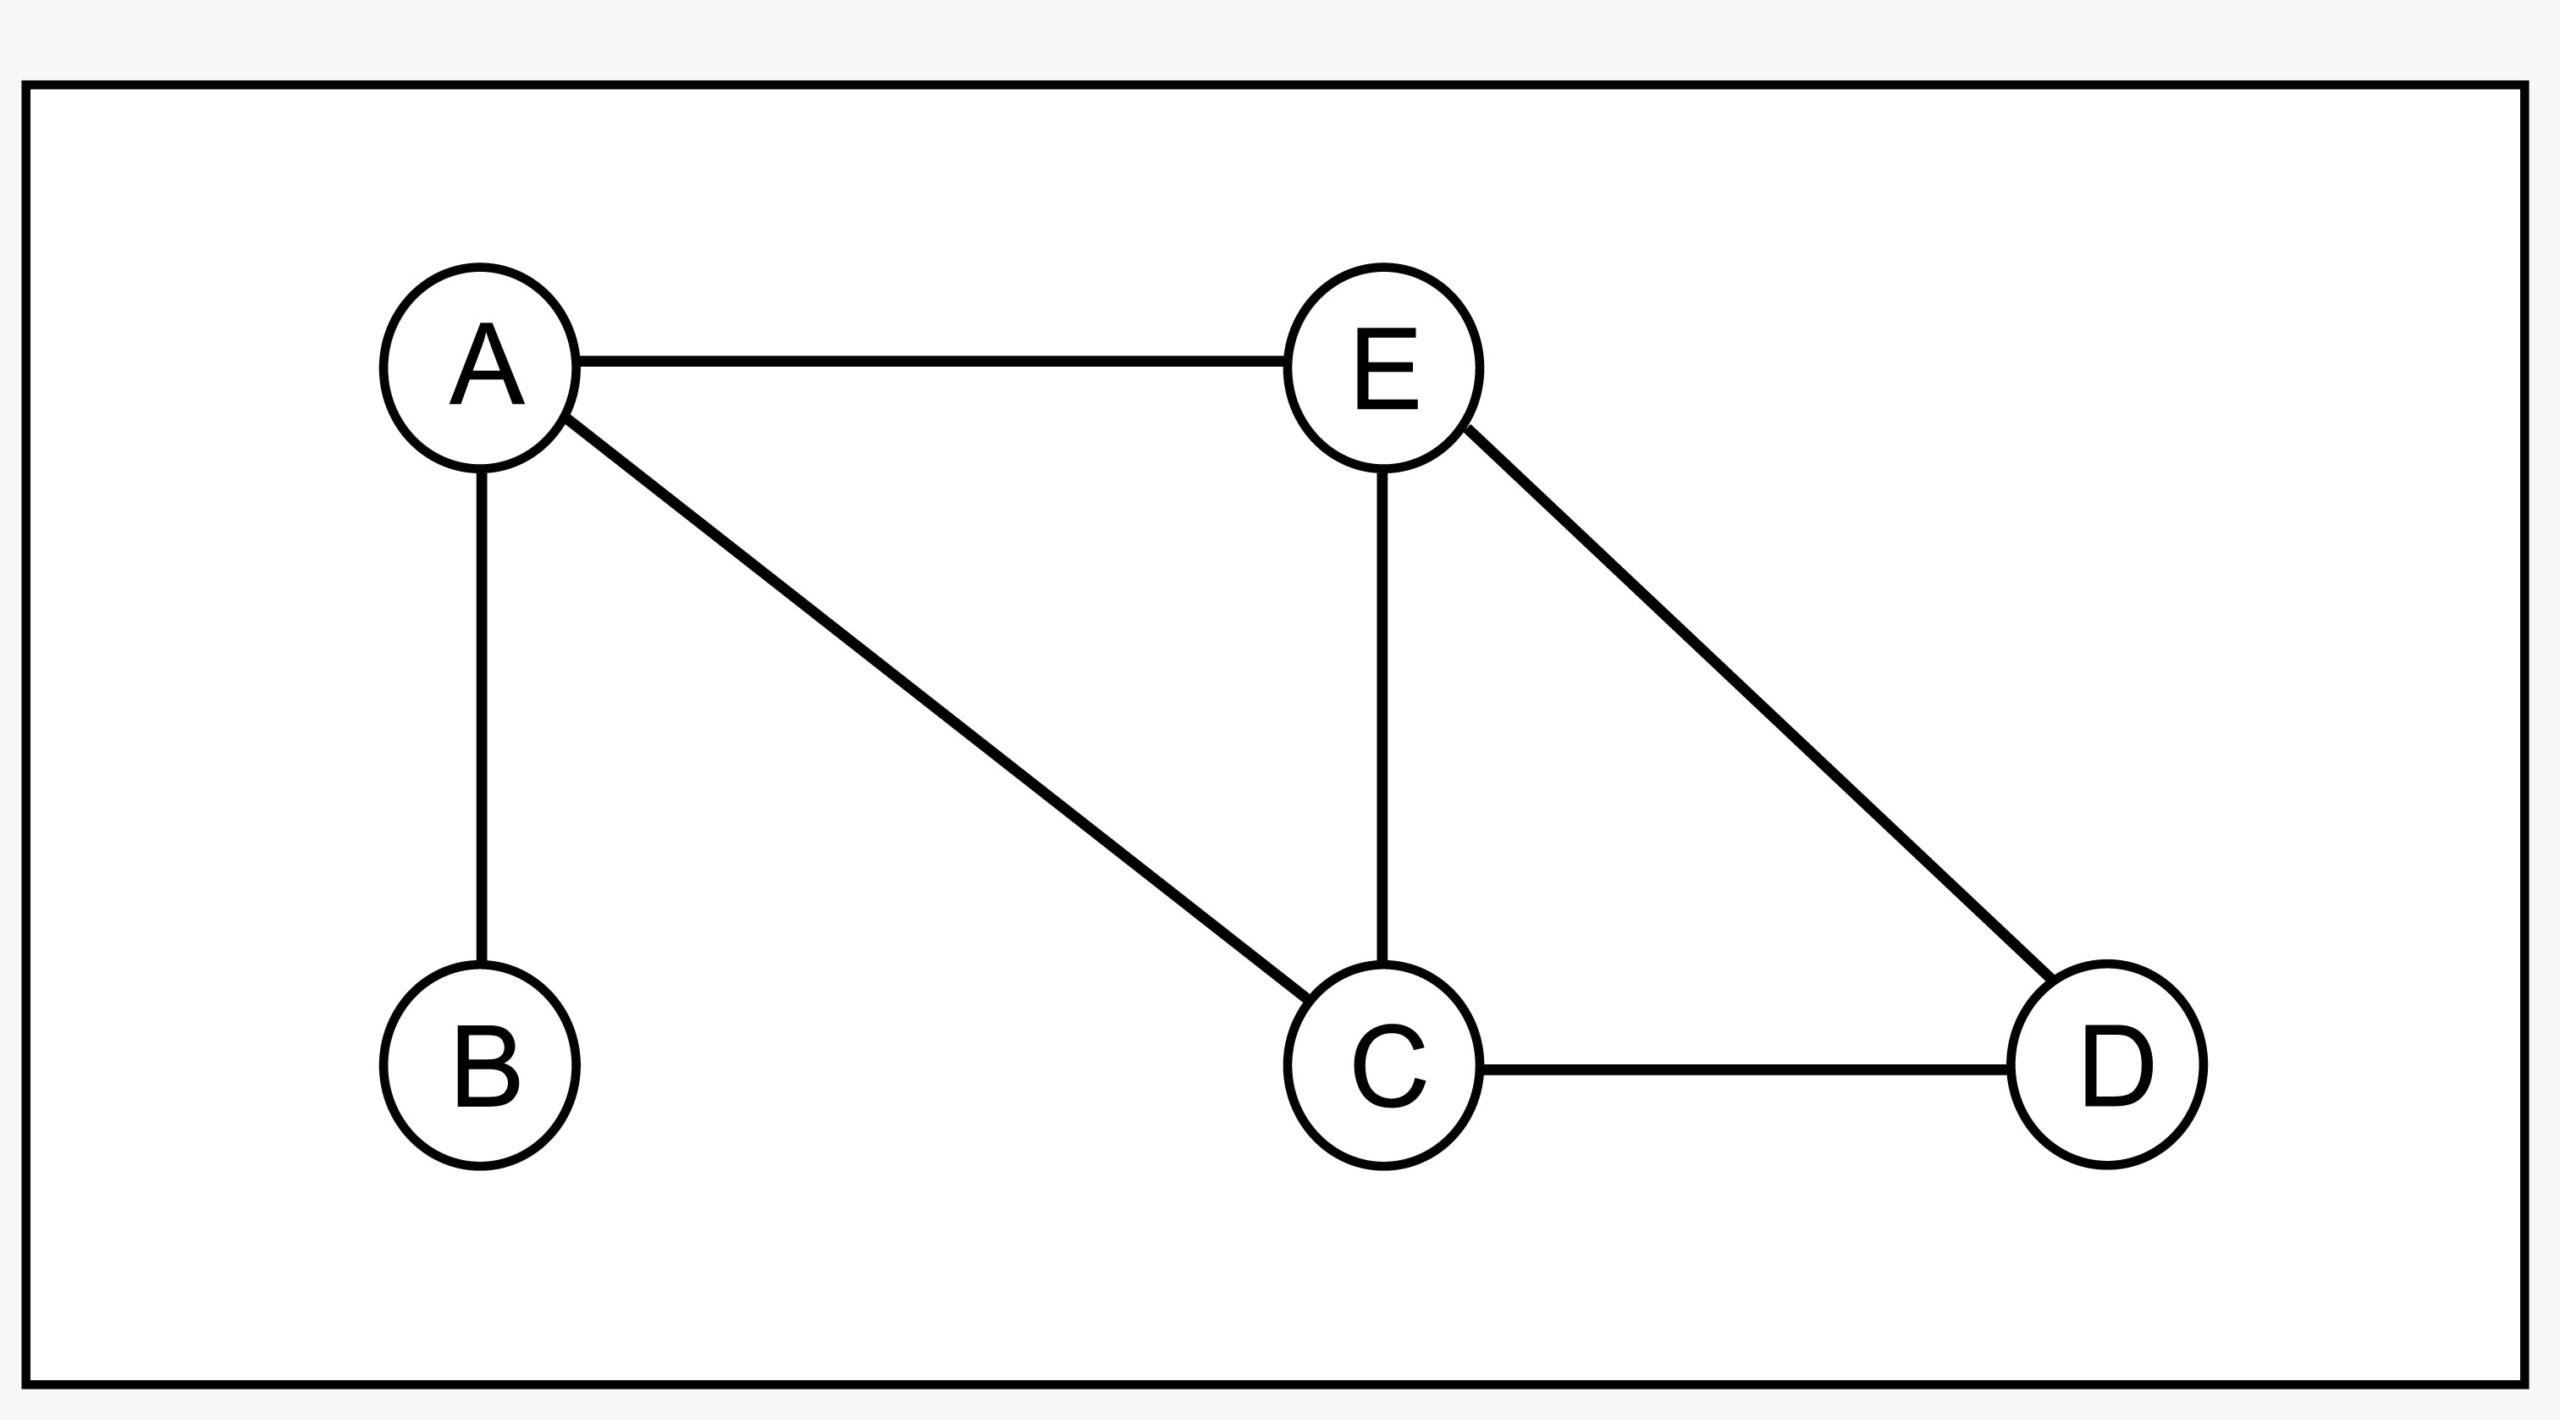 Şekil1.Beş düğüm ve altı (yön bilgisi olmayan) kenardan olaşan grafik örneği.